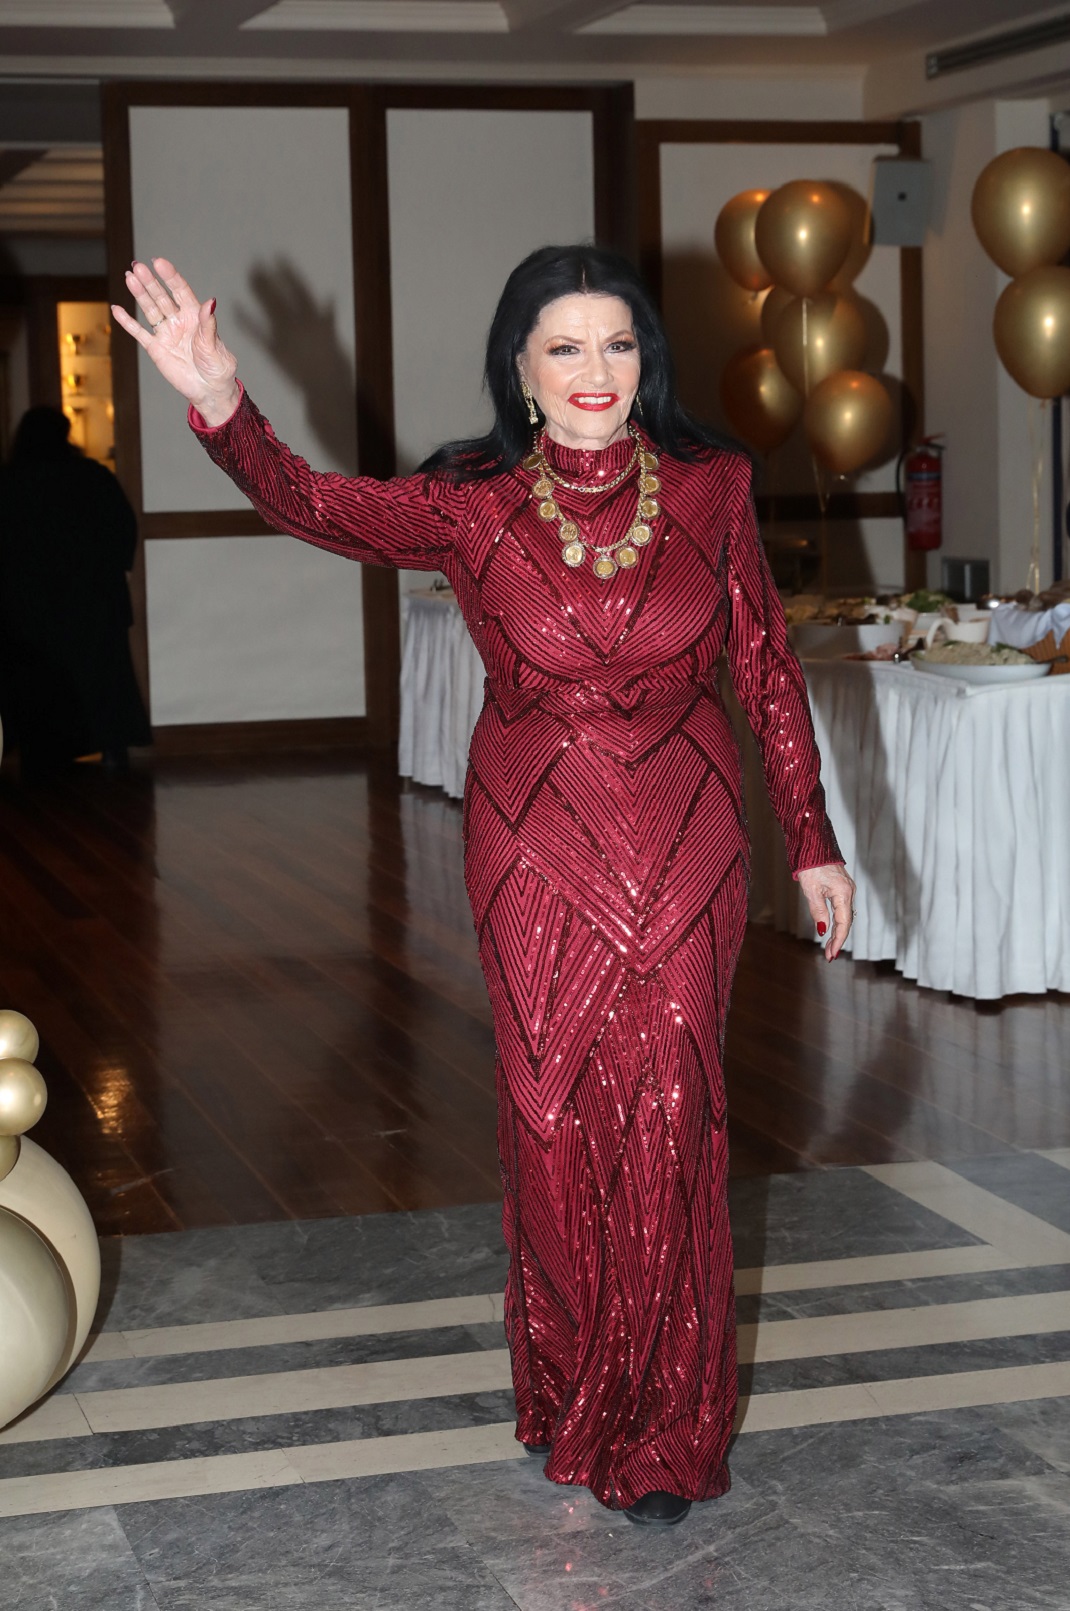 Η Ζωζώ Σαπουντζάκη έκλεισε τα 90 της χρόνια και το γιόρτασε με την ψυχή της! Το εντυπωσιακό της φόρεμα (εικόνες)